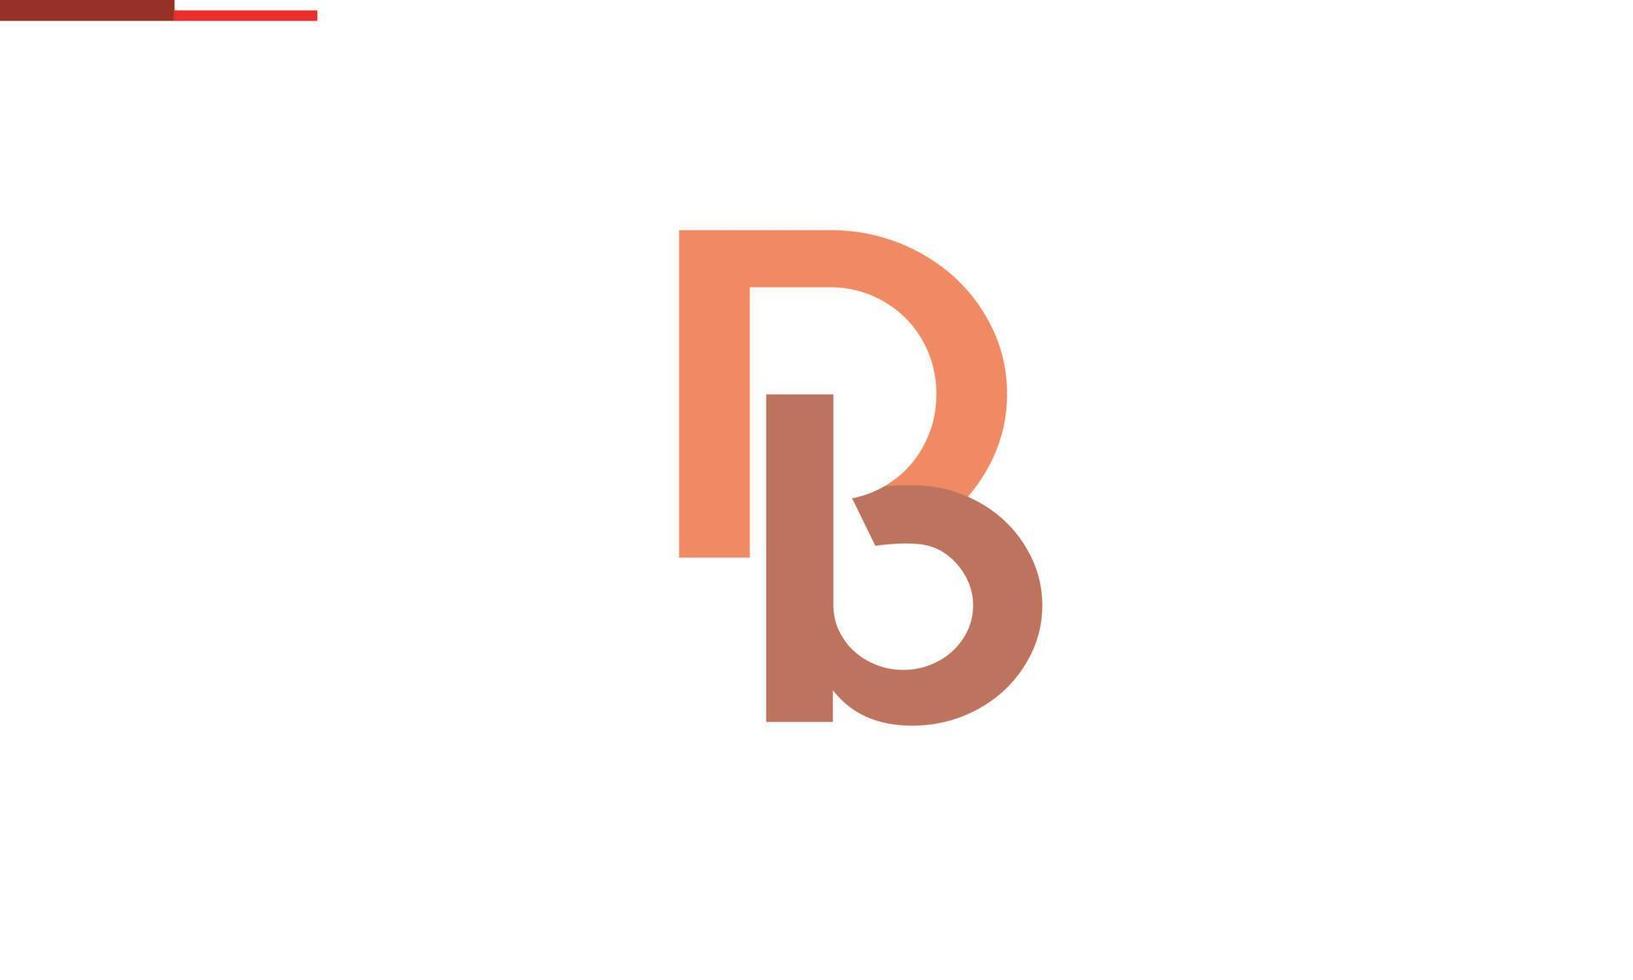 alphabet lettres initiales monogramme logo db, bd, d et b vecteur